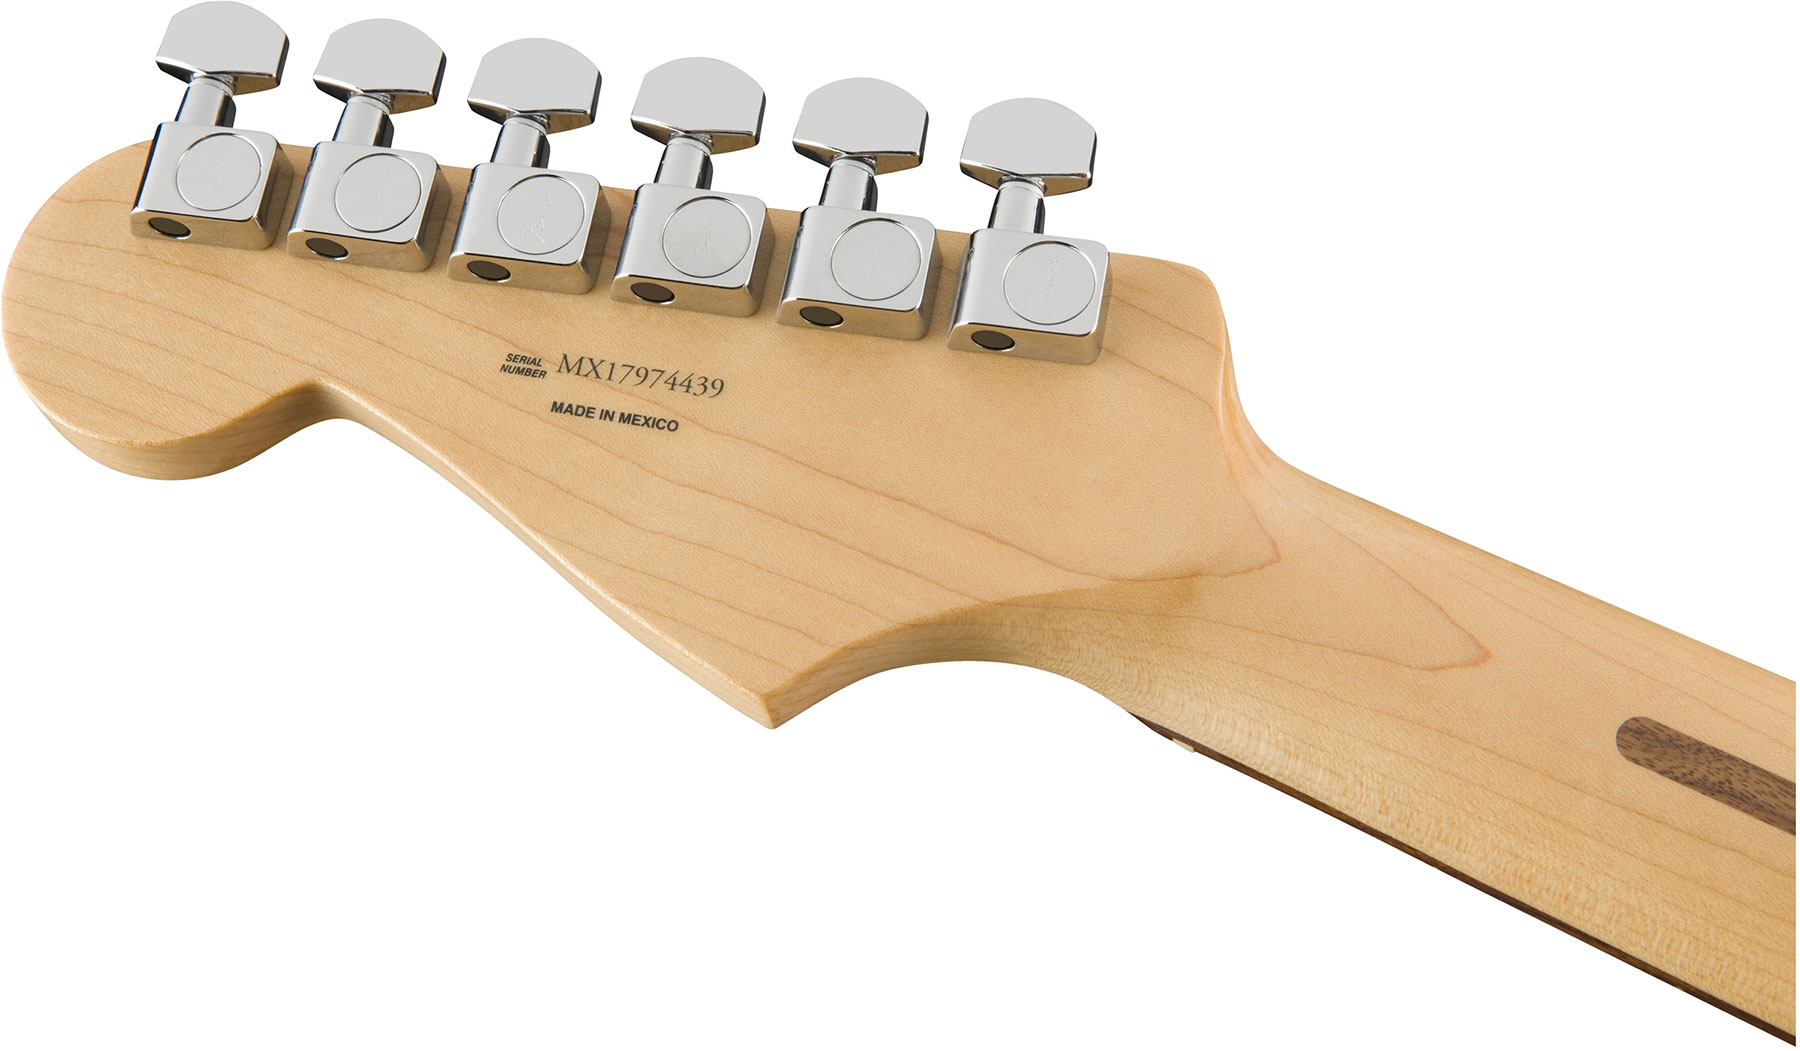 Fender Strat Player Plus Top Mex 3s Trem Pf - Tobacco Burst - Elektrische gitaar in Str-vorm - Variation 3